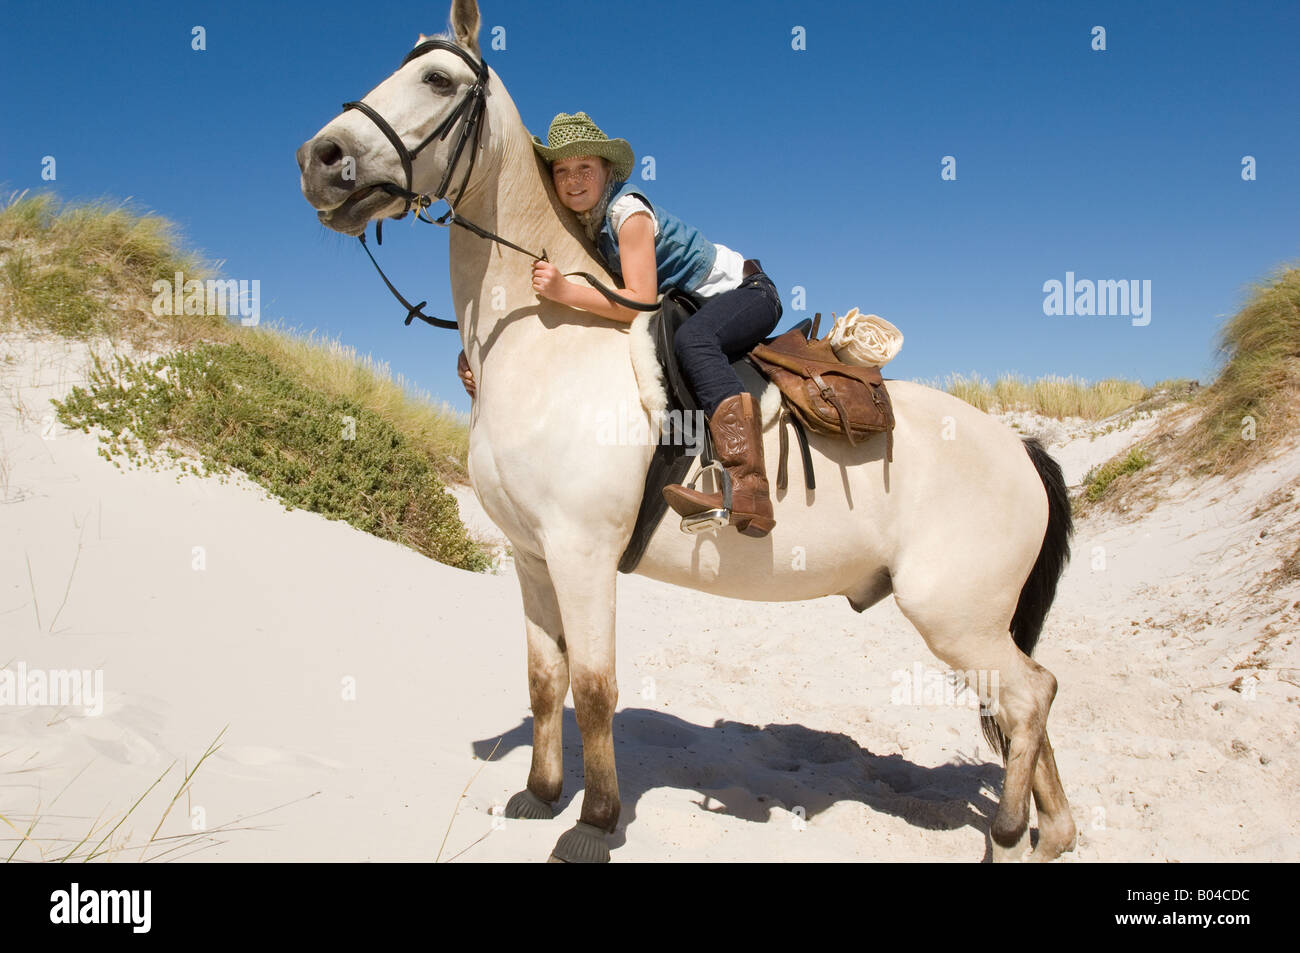 A girl riding a horse Stock Photo